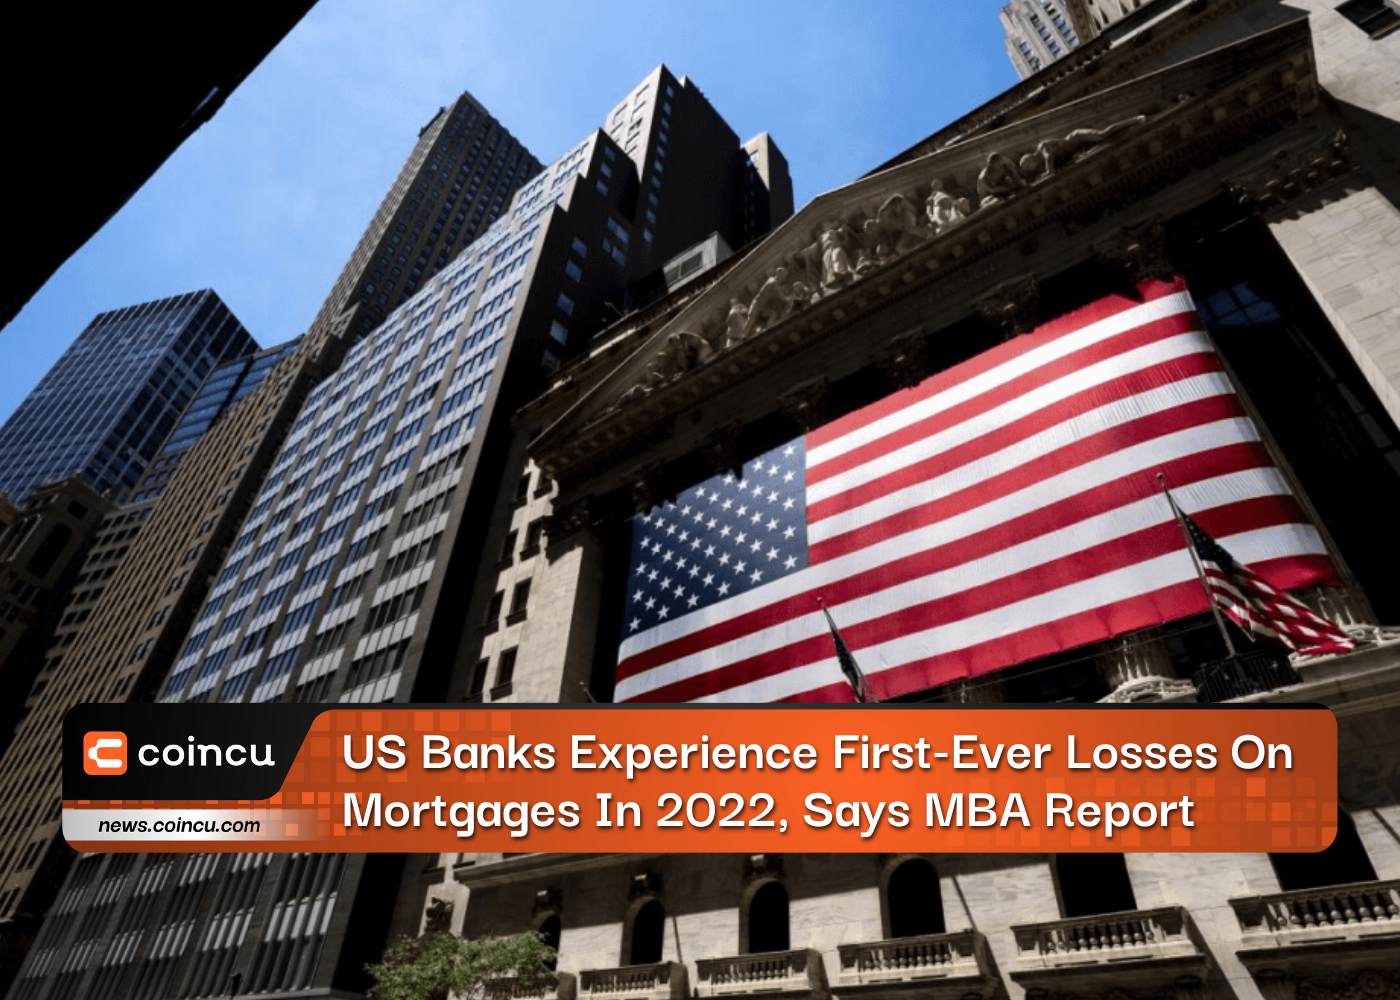 Les banques américaines subissent leurs premières pertes sur les prêts hypothécaires en 2022, selon un rapport du MBA